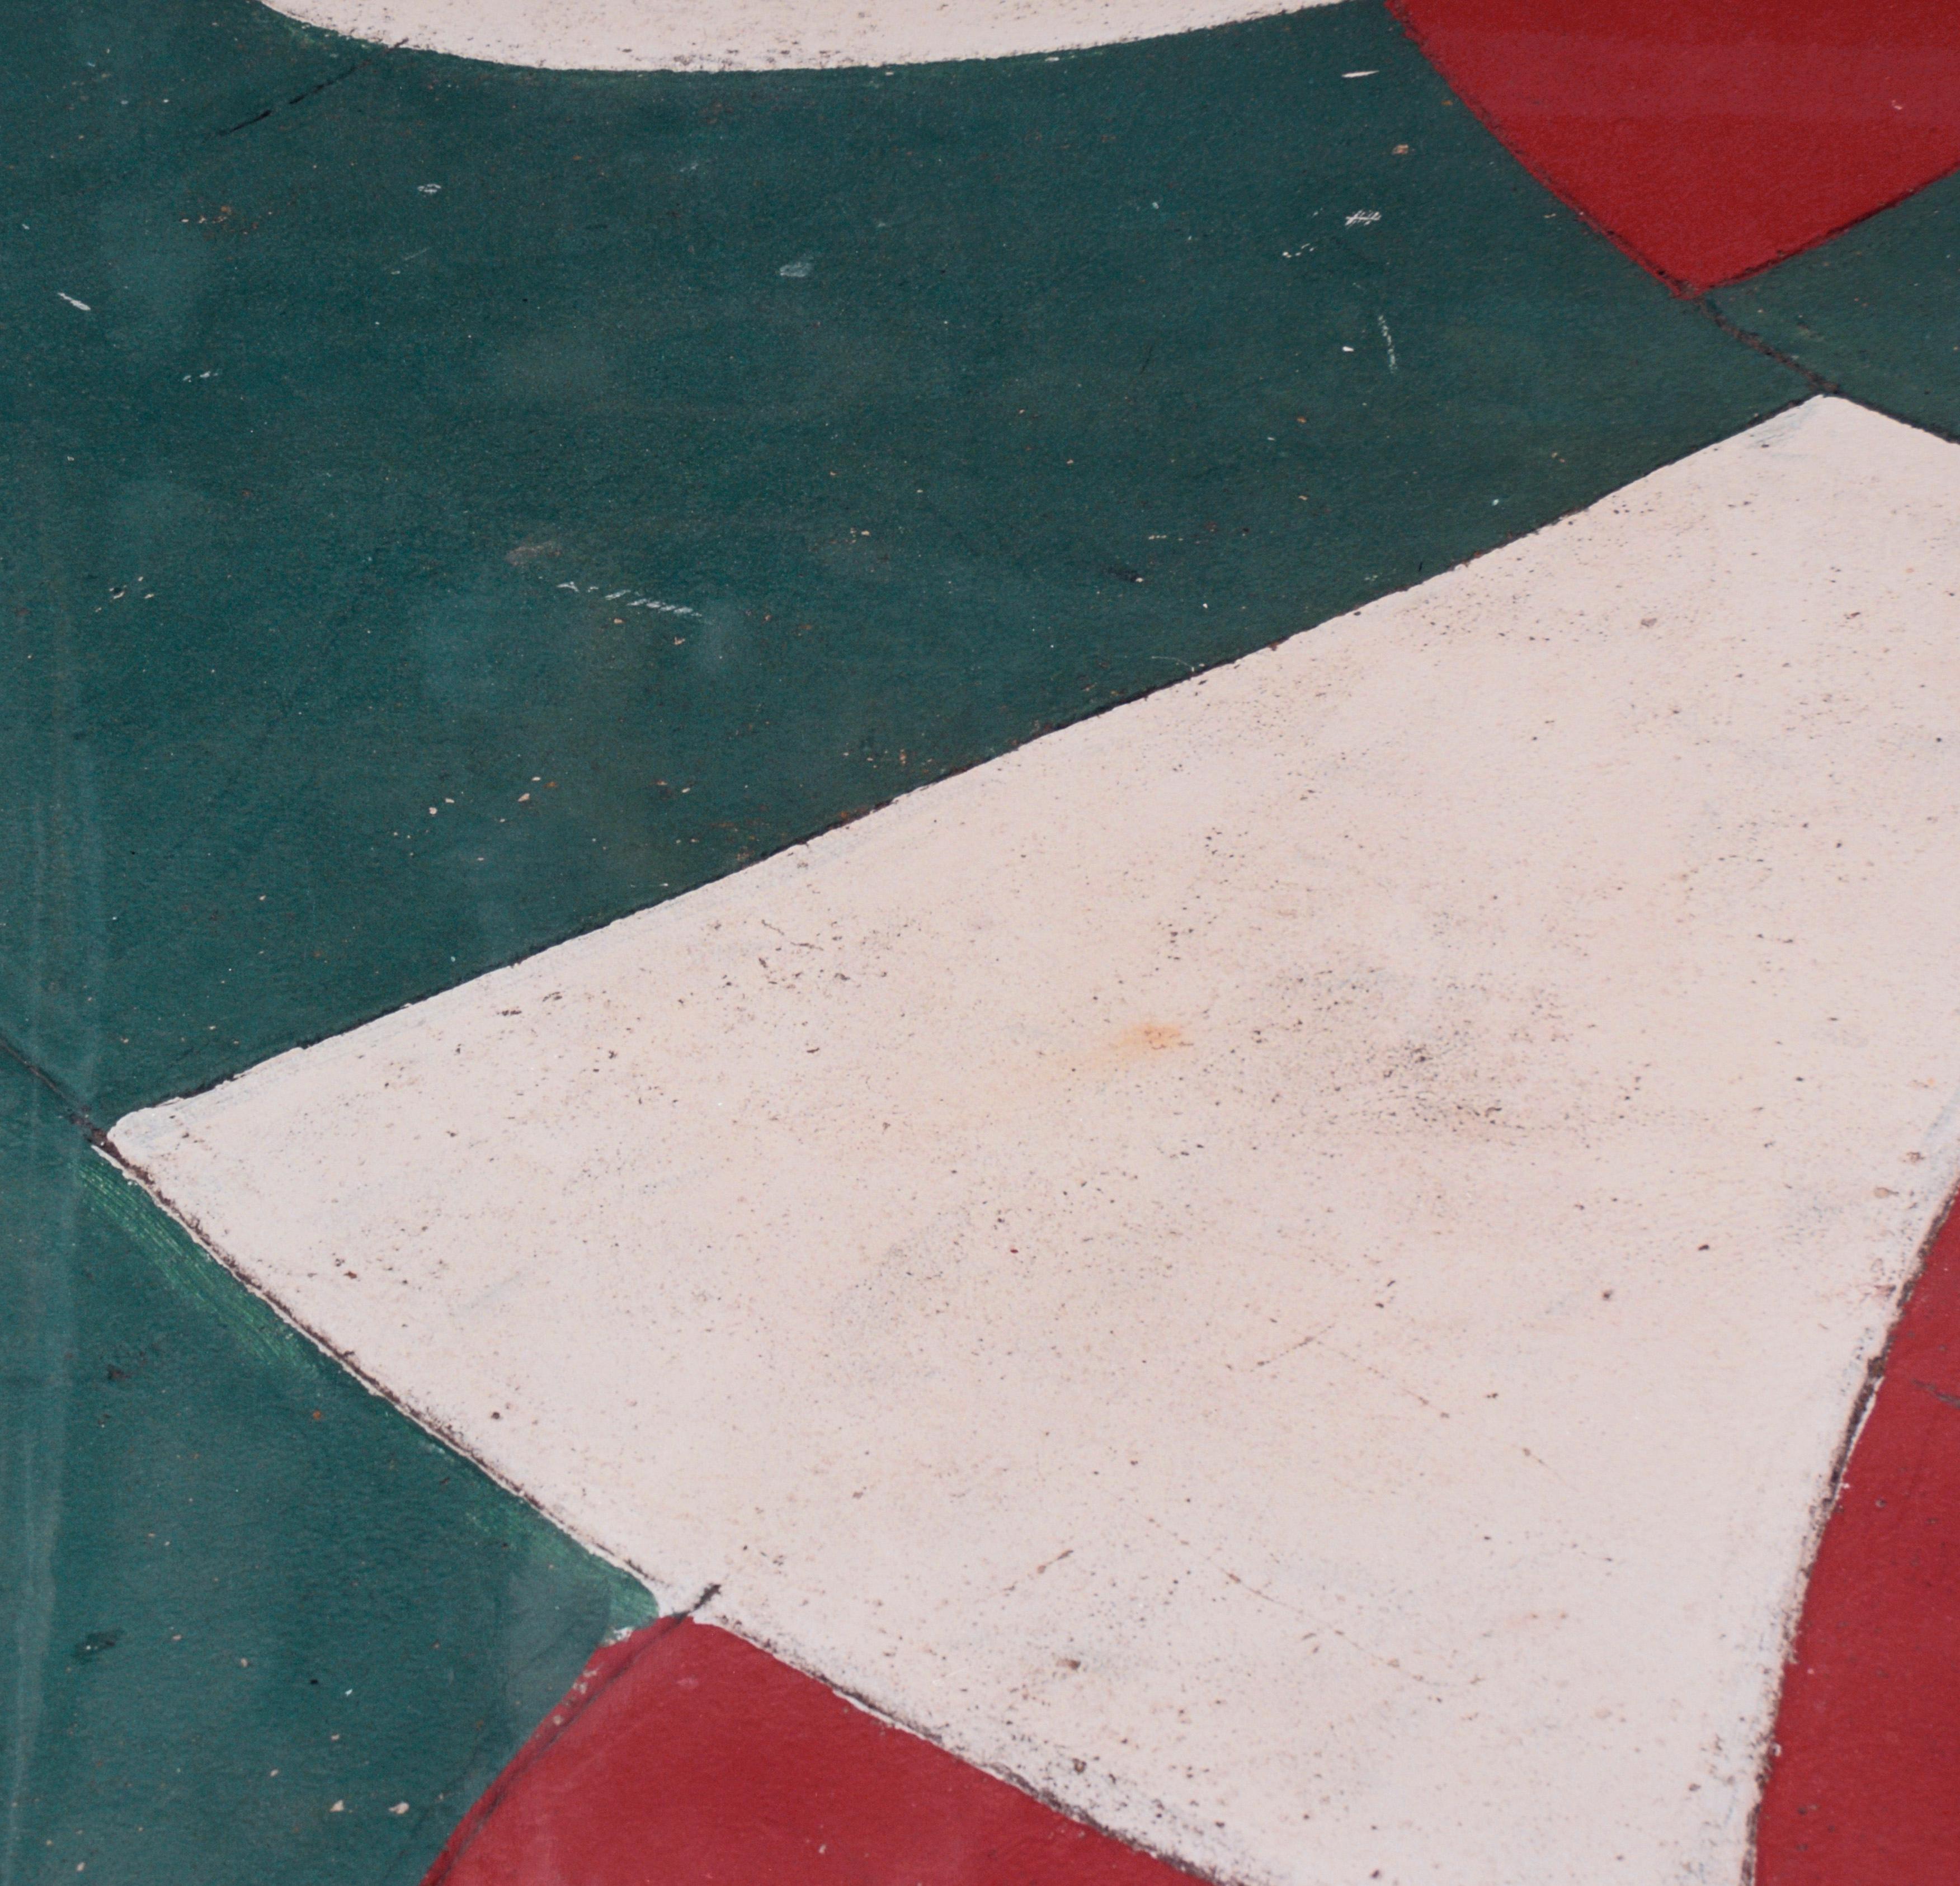 Bemalter Beton – Großformatige Texturfotografie in großem Maßstab

Detailliertes Makrofoto von Bill Clark (Amerikaner, 20. Jahrhundert). Clark hat ein Foto von Beton gemacht, der in verschiedenen Farben gestrichen wurde - rot, weiß und grün. Dieses